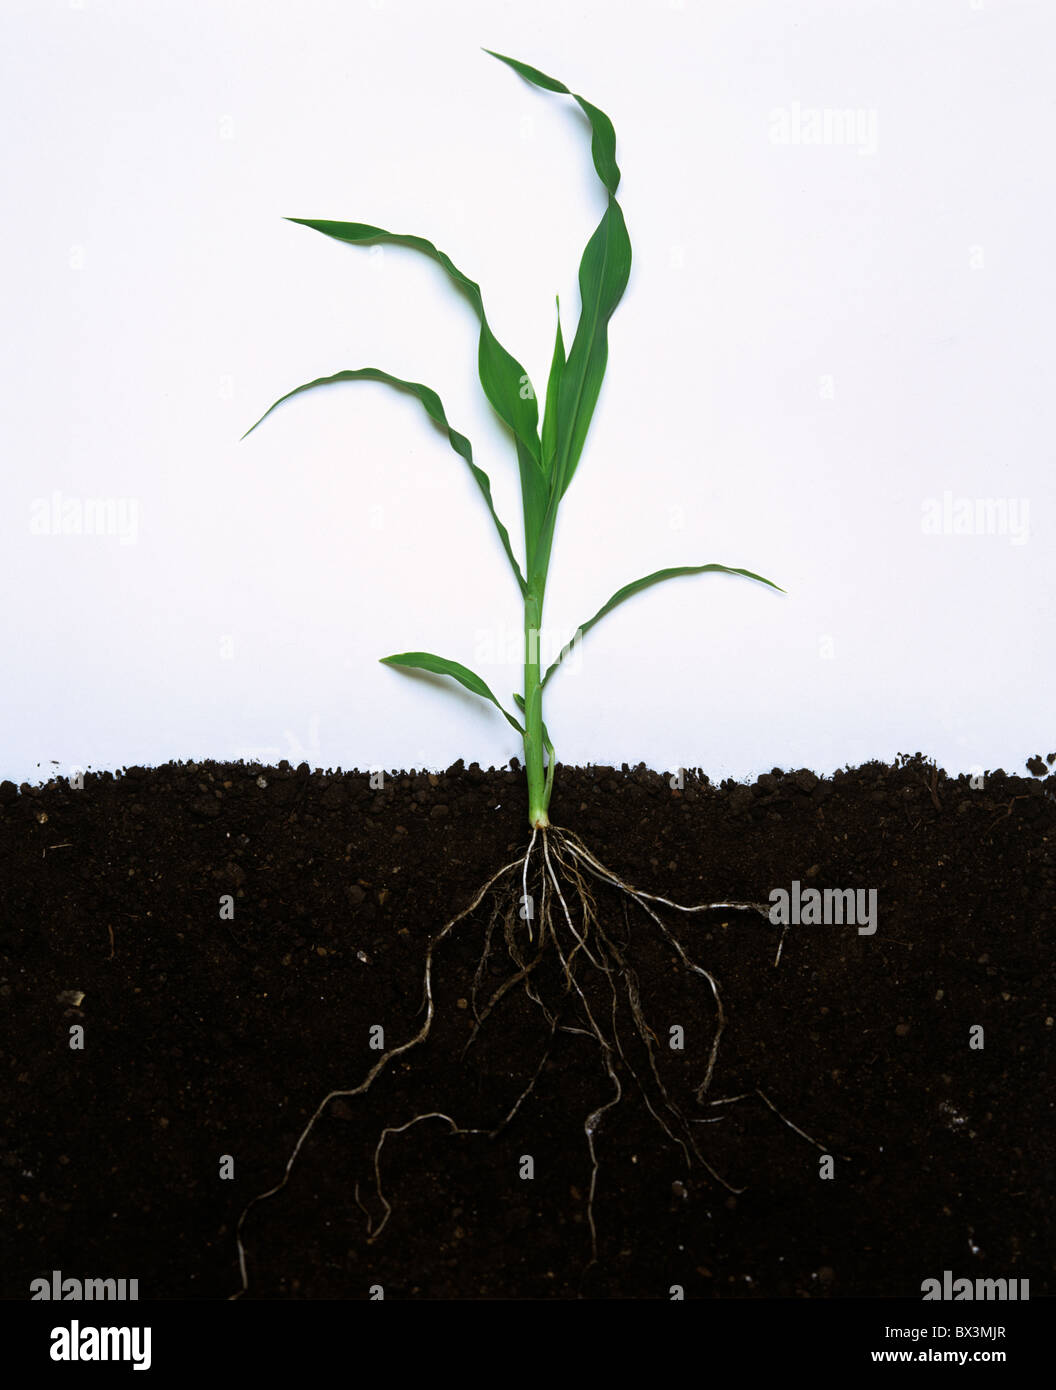 Jóvenes de maíz o maíz planta entera con hojas y raíces Foto de stock